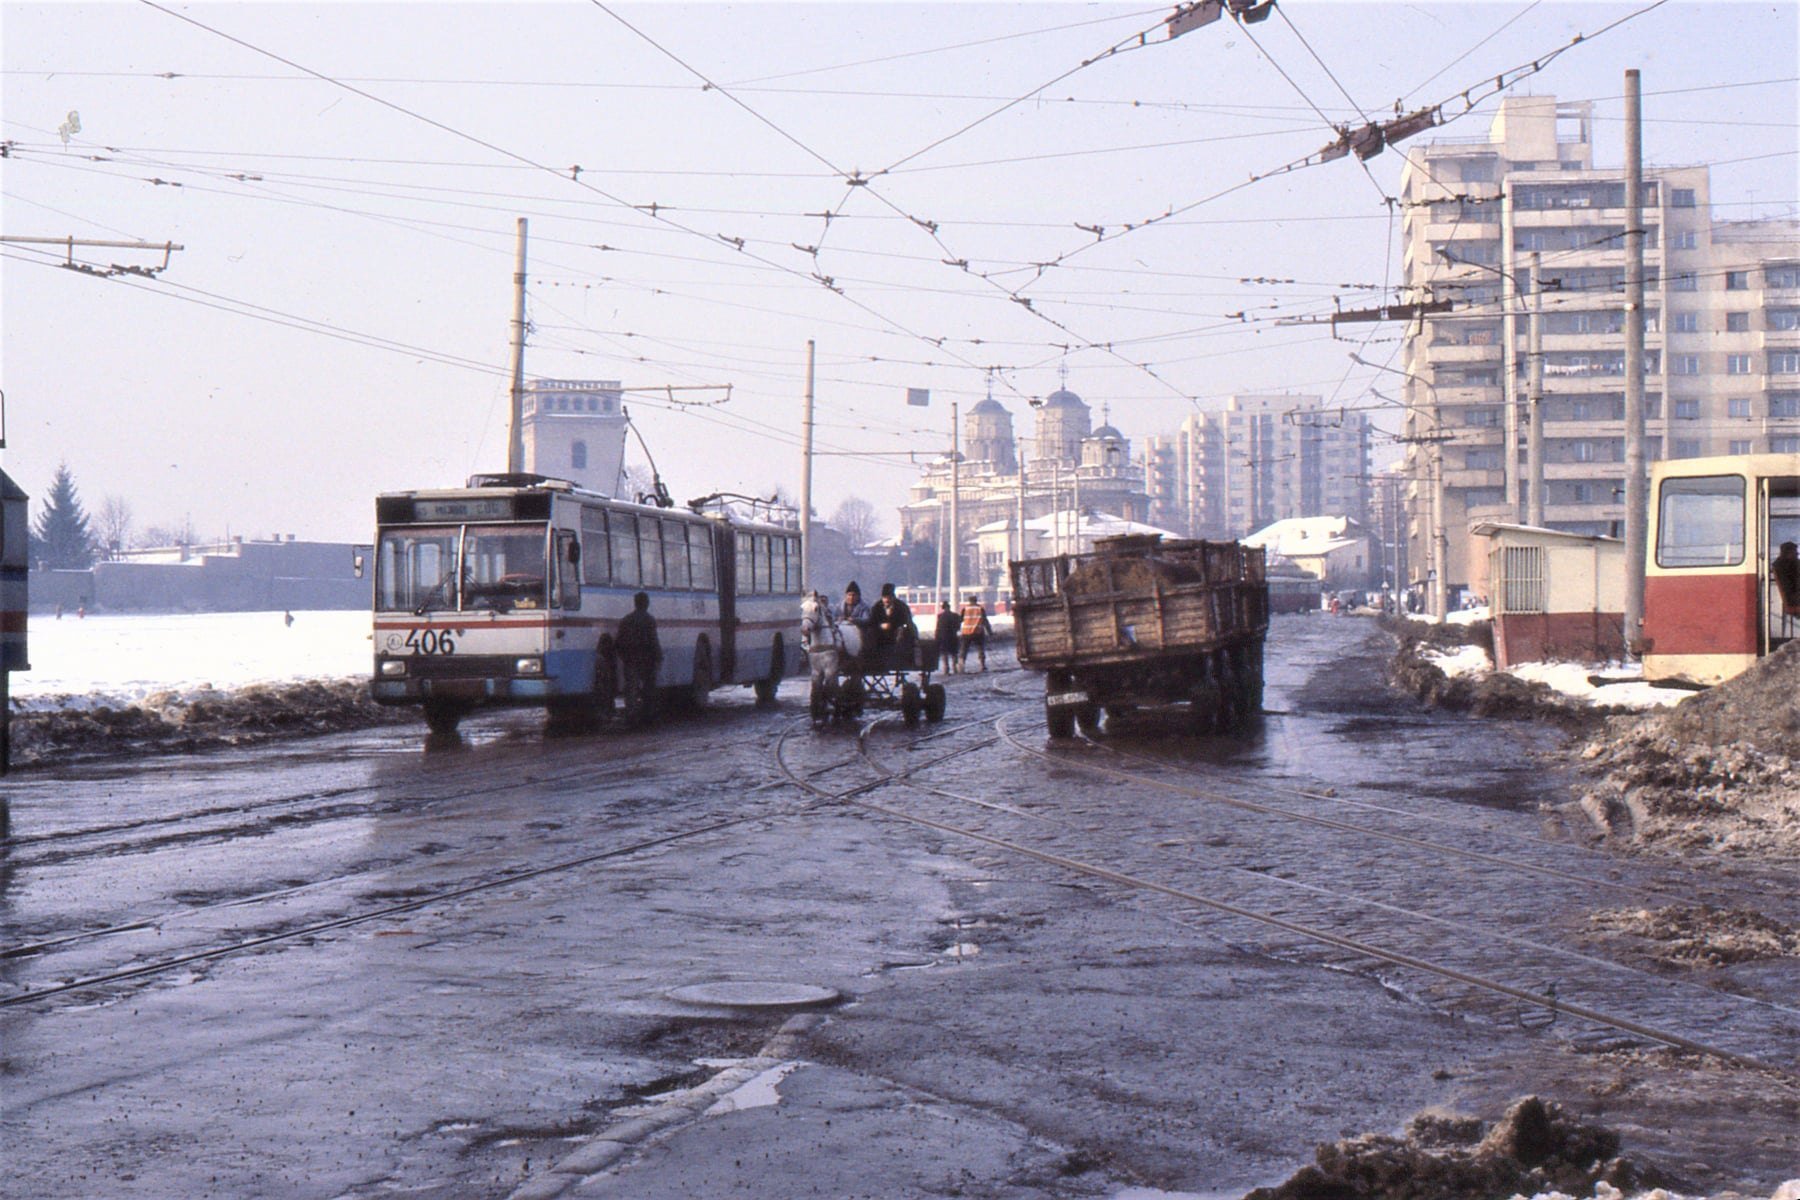  FOTO Gropi, noroaie și căruțe în Tg. Cucu. Imagine din 1988 pentru cei care mai tânjesc după comunism